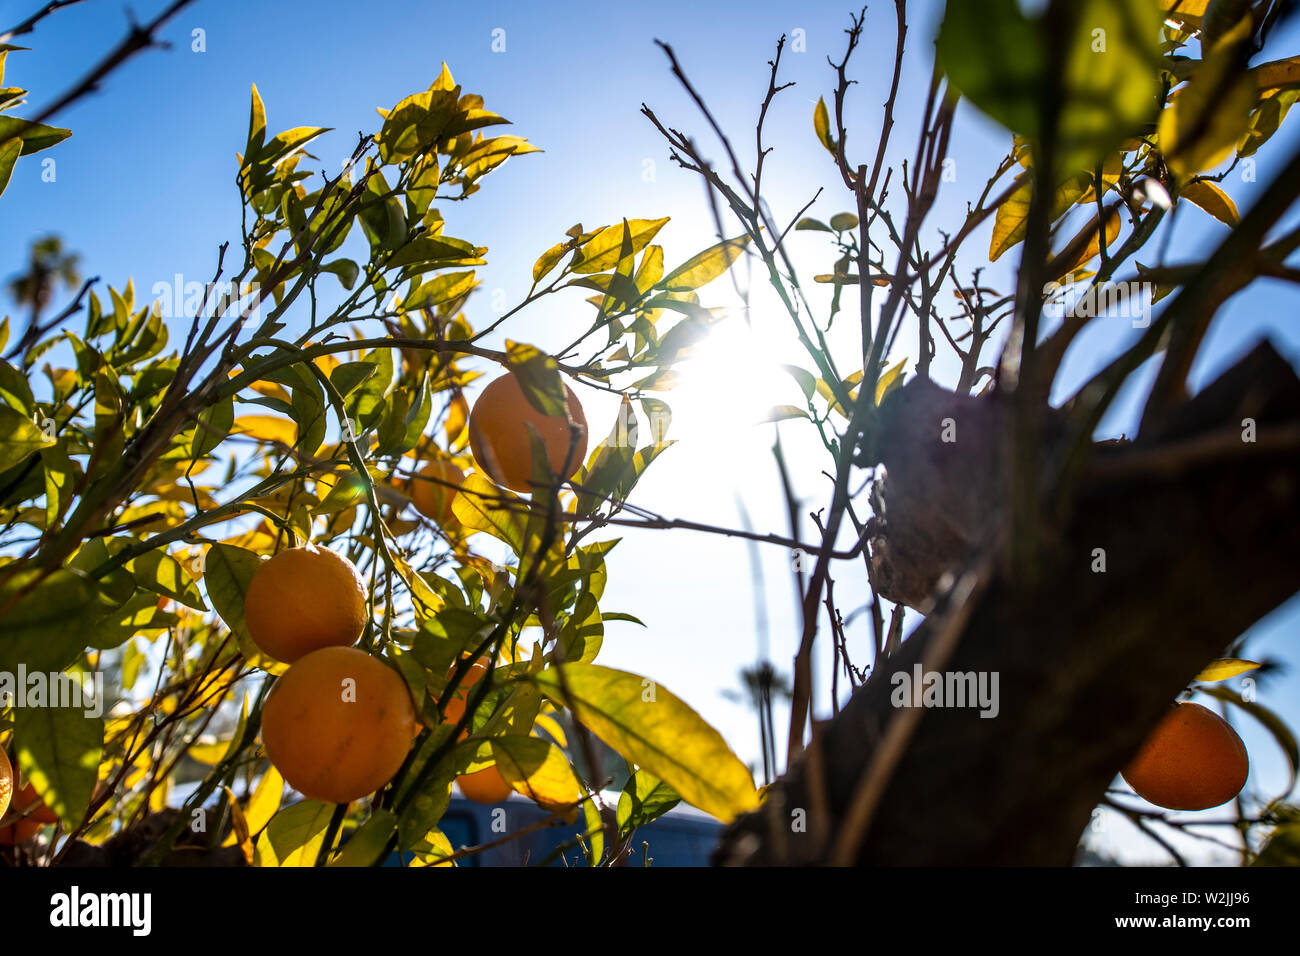 Marbella Themenbild Sommer, Orangen   Orangen an einem Orangenbaum vor blauem Himmel bei strahlendem Sonnenschein. Stock Photo